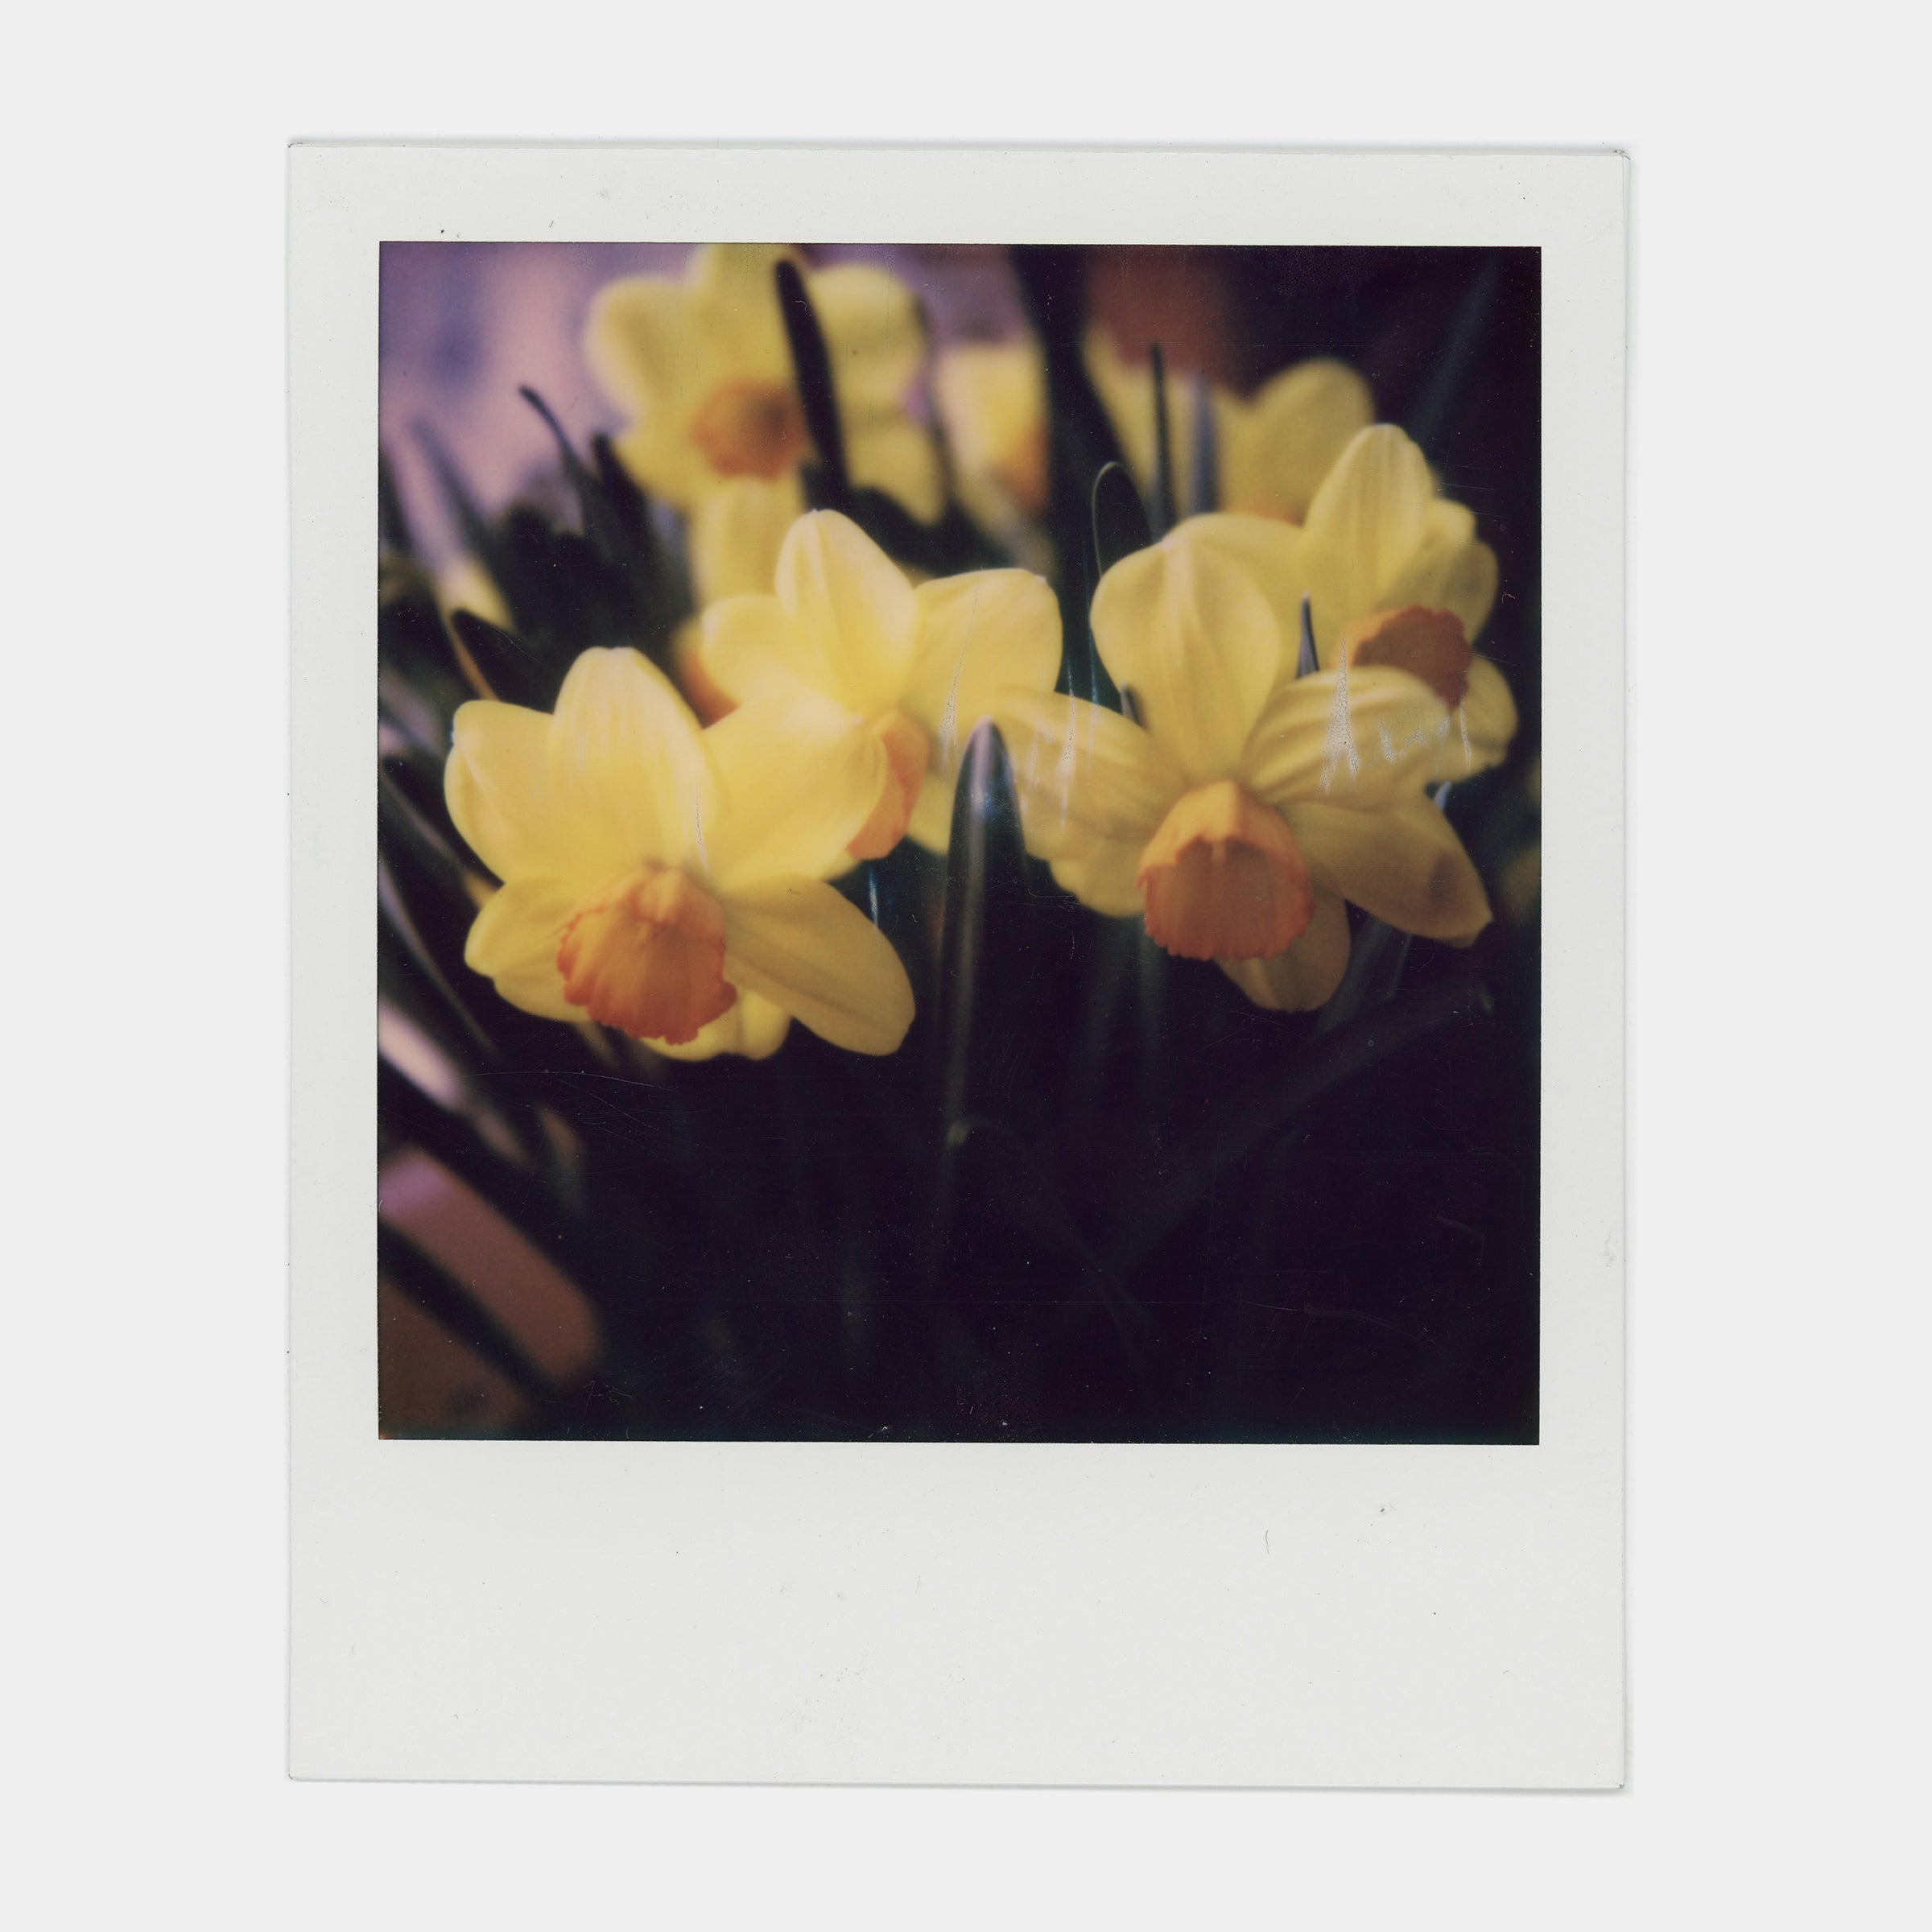 Polaroid 600 Color Instant Film (2 Pack)